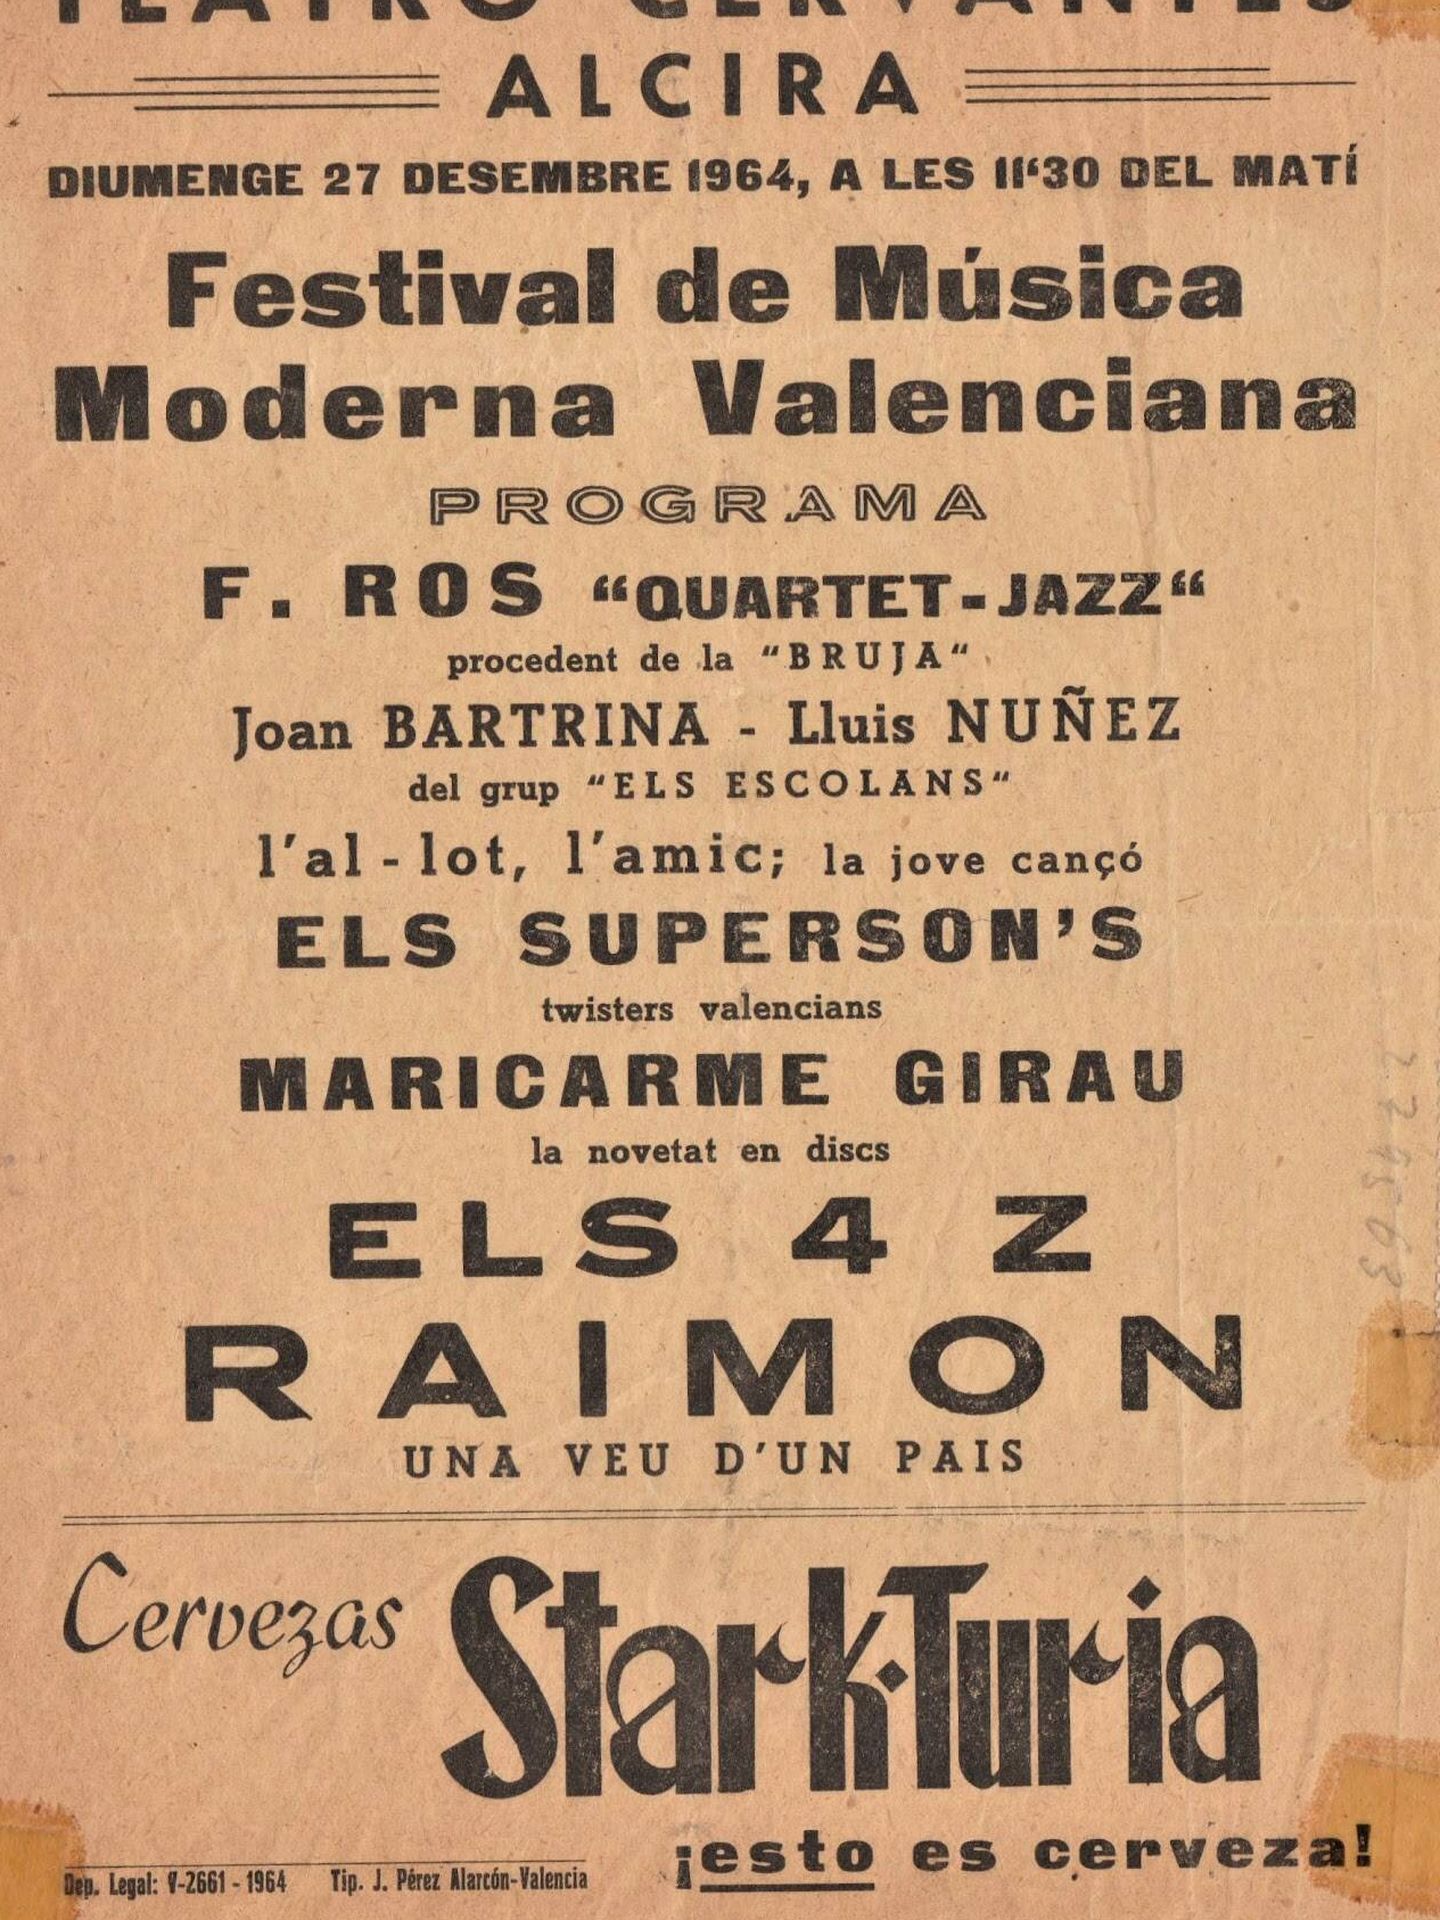 Cartel de Stark Turia patrocinando festival 1964. (Supersons)